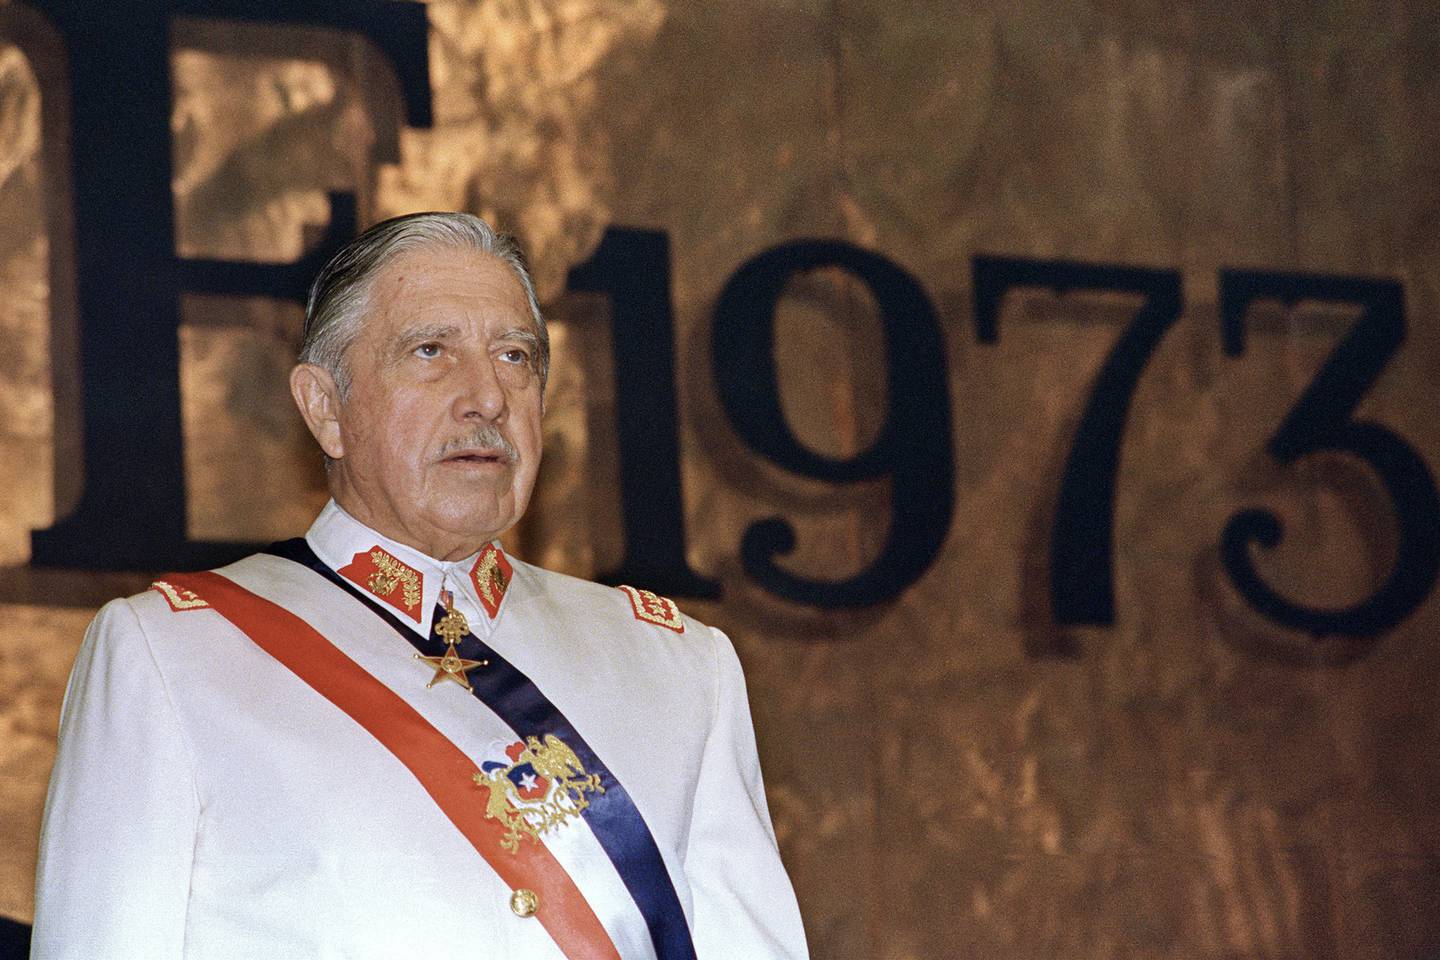 El presidente de Chile, general Augusto Pinochet, aparece en una fotografía durante una ceremonia oficial en Santiago, el 11 de marzo de 1988.